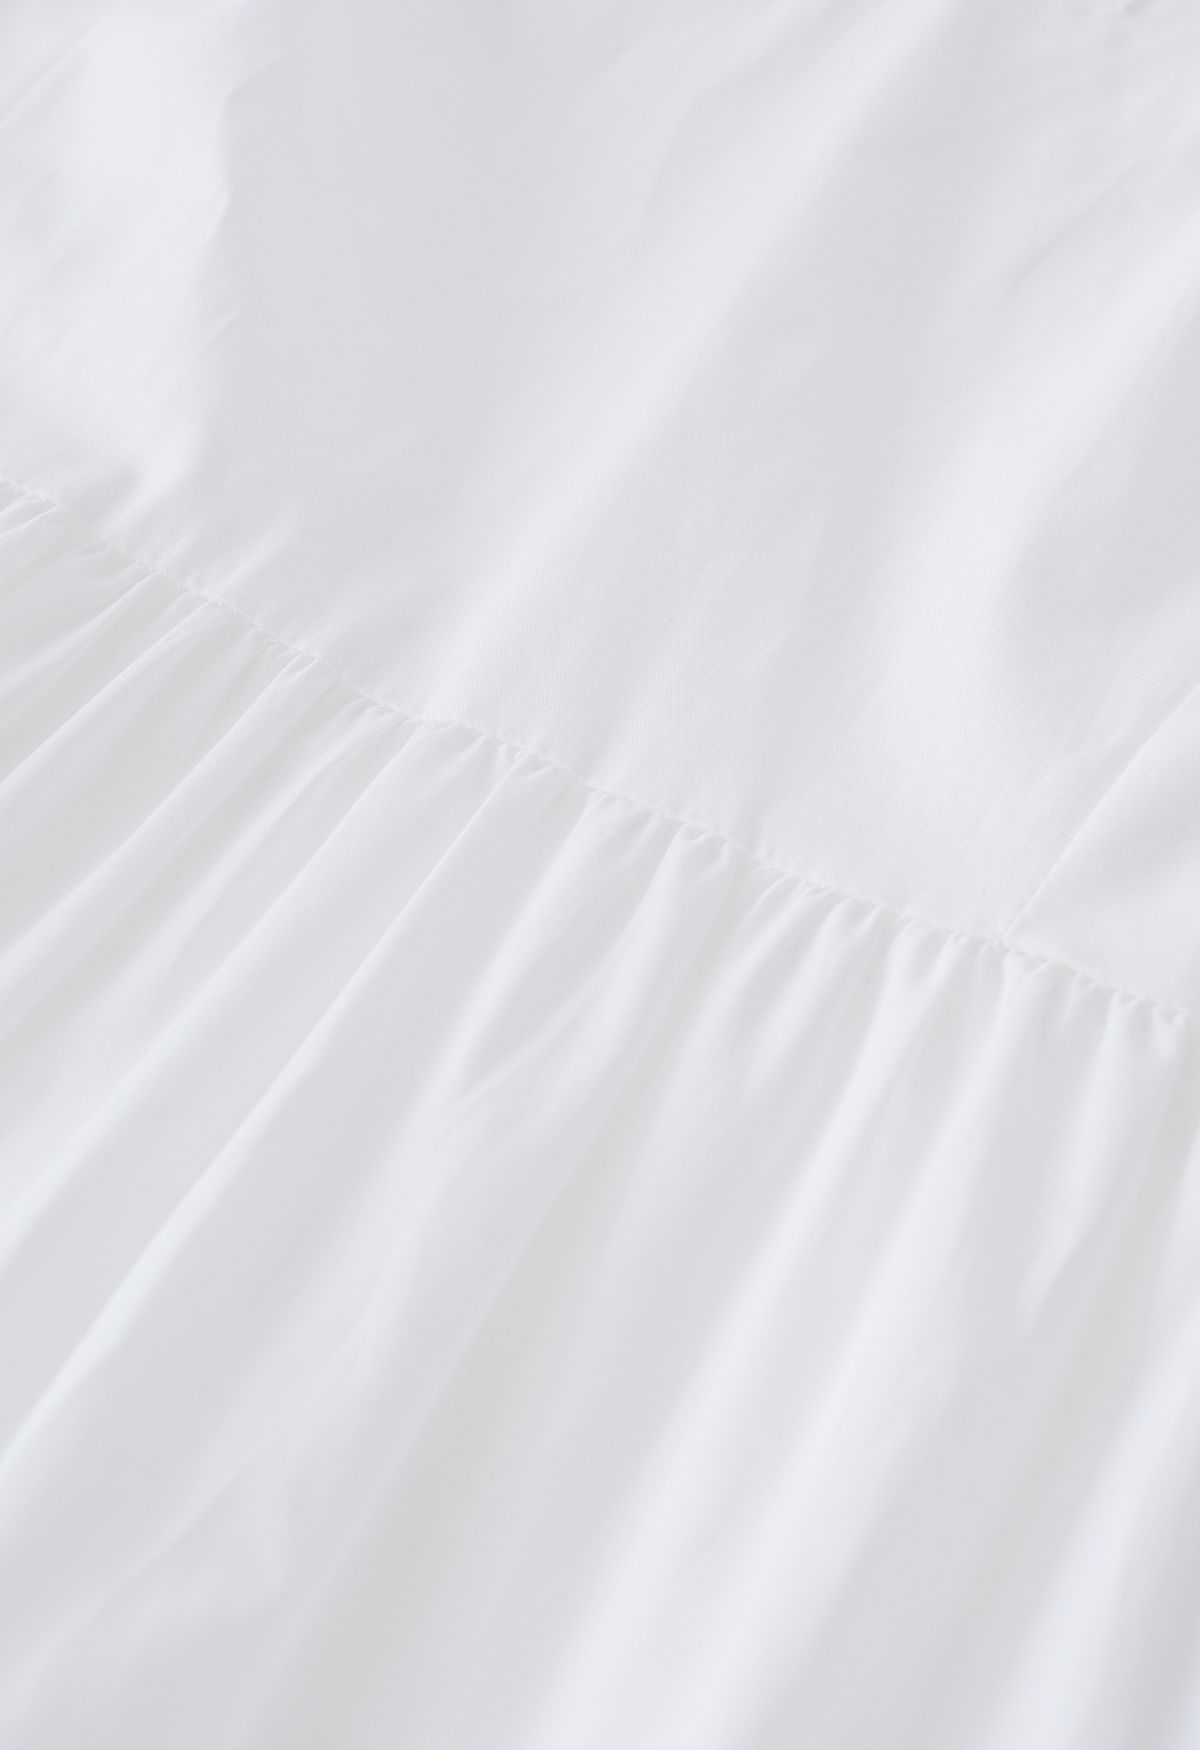 V-Neck Flutter Sleeve Ruffle Cotton Dress in White